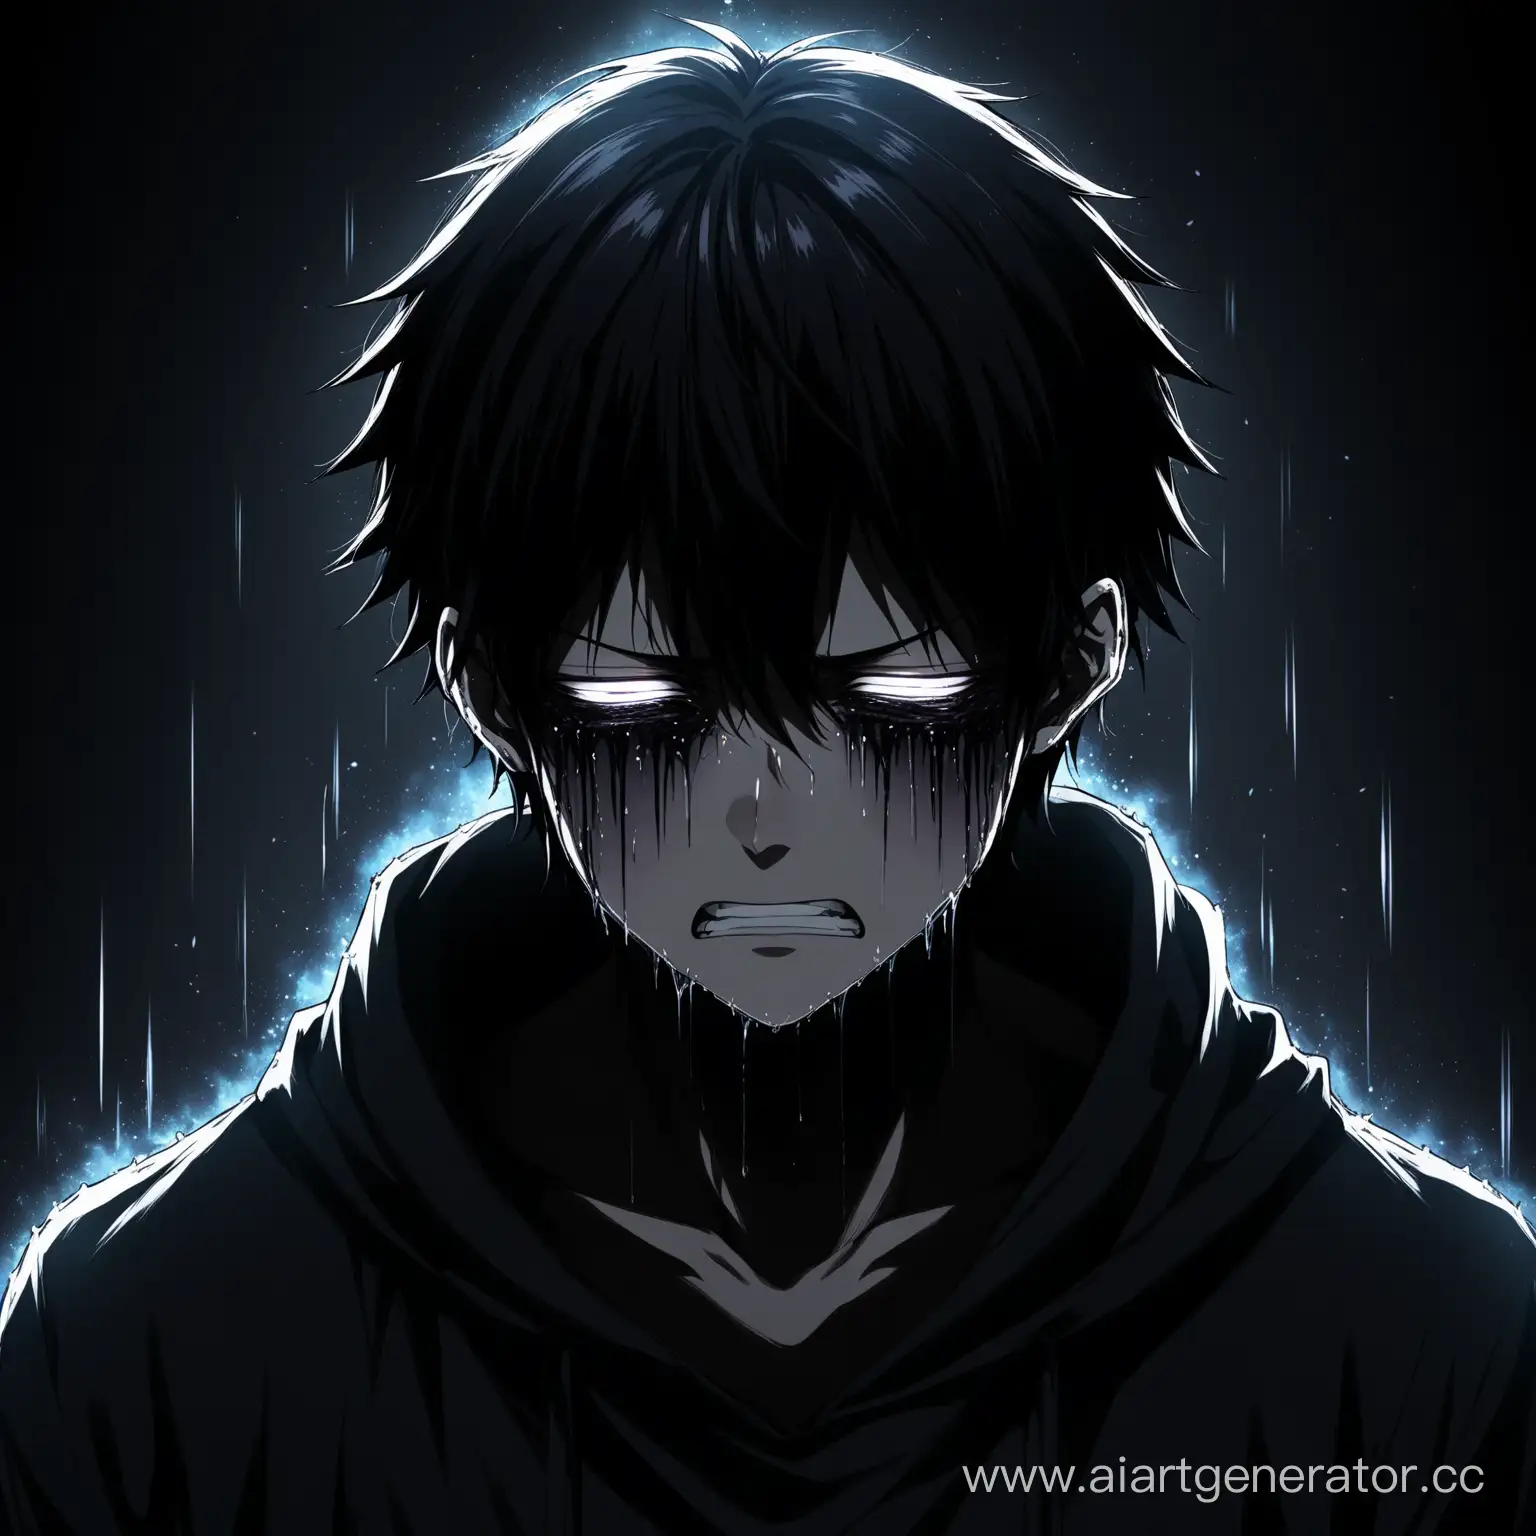 аниме персонаж очень страдает тёмная аура выходит из него по бокам плачет боль сила 